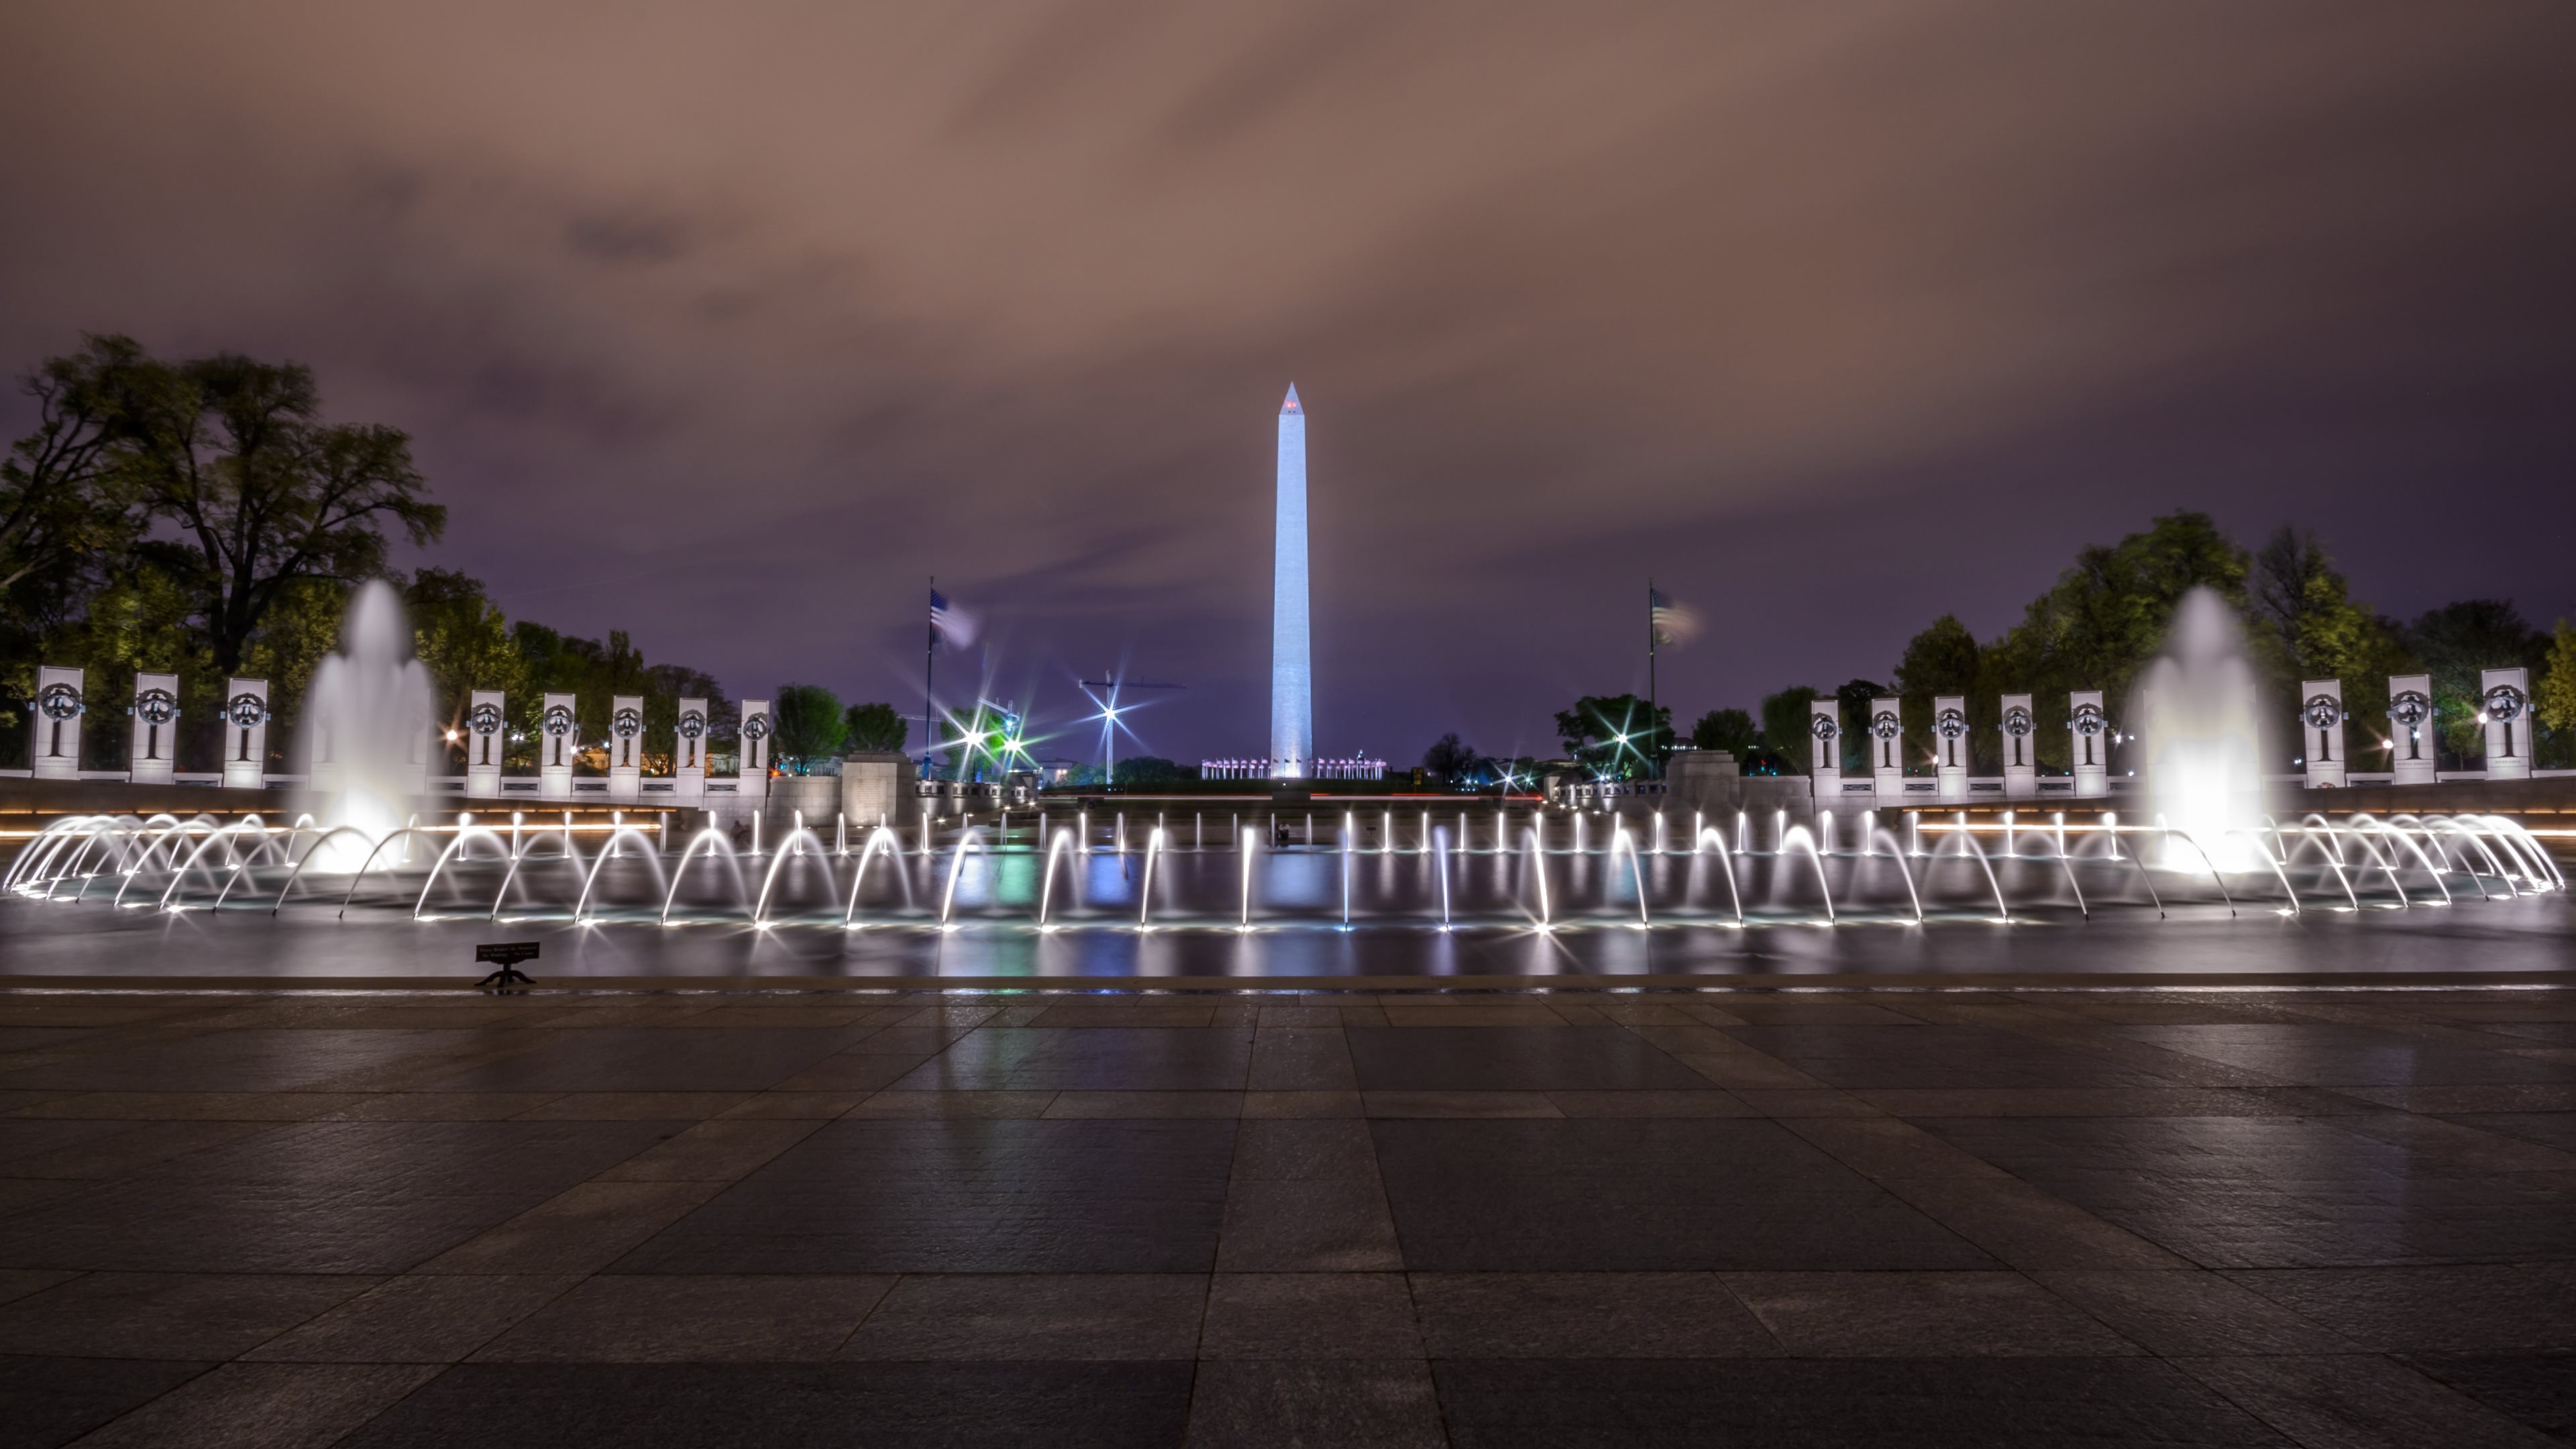 Descargar fondos de escritorio de Monumento De Washington HD